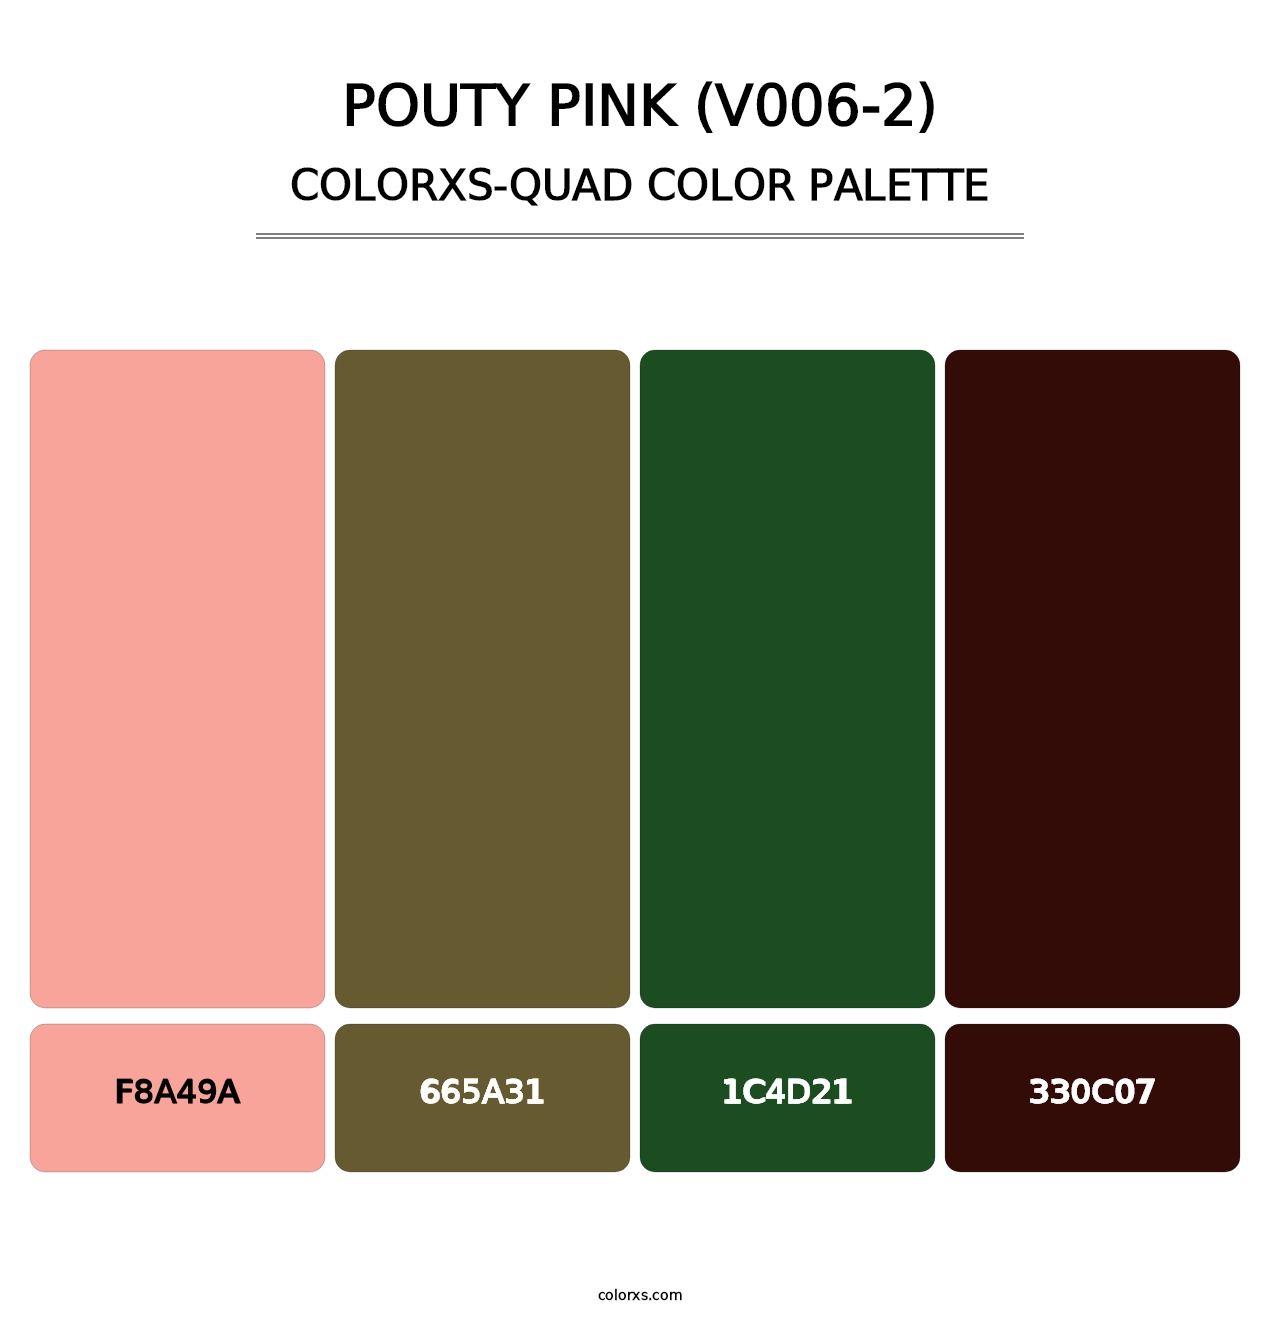 Pouty Pink (V006-2) - Colorxs Quad Palette